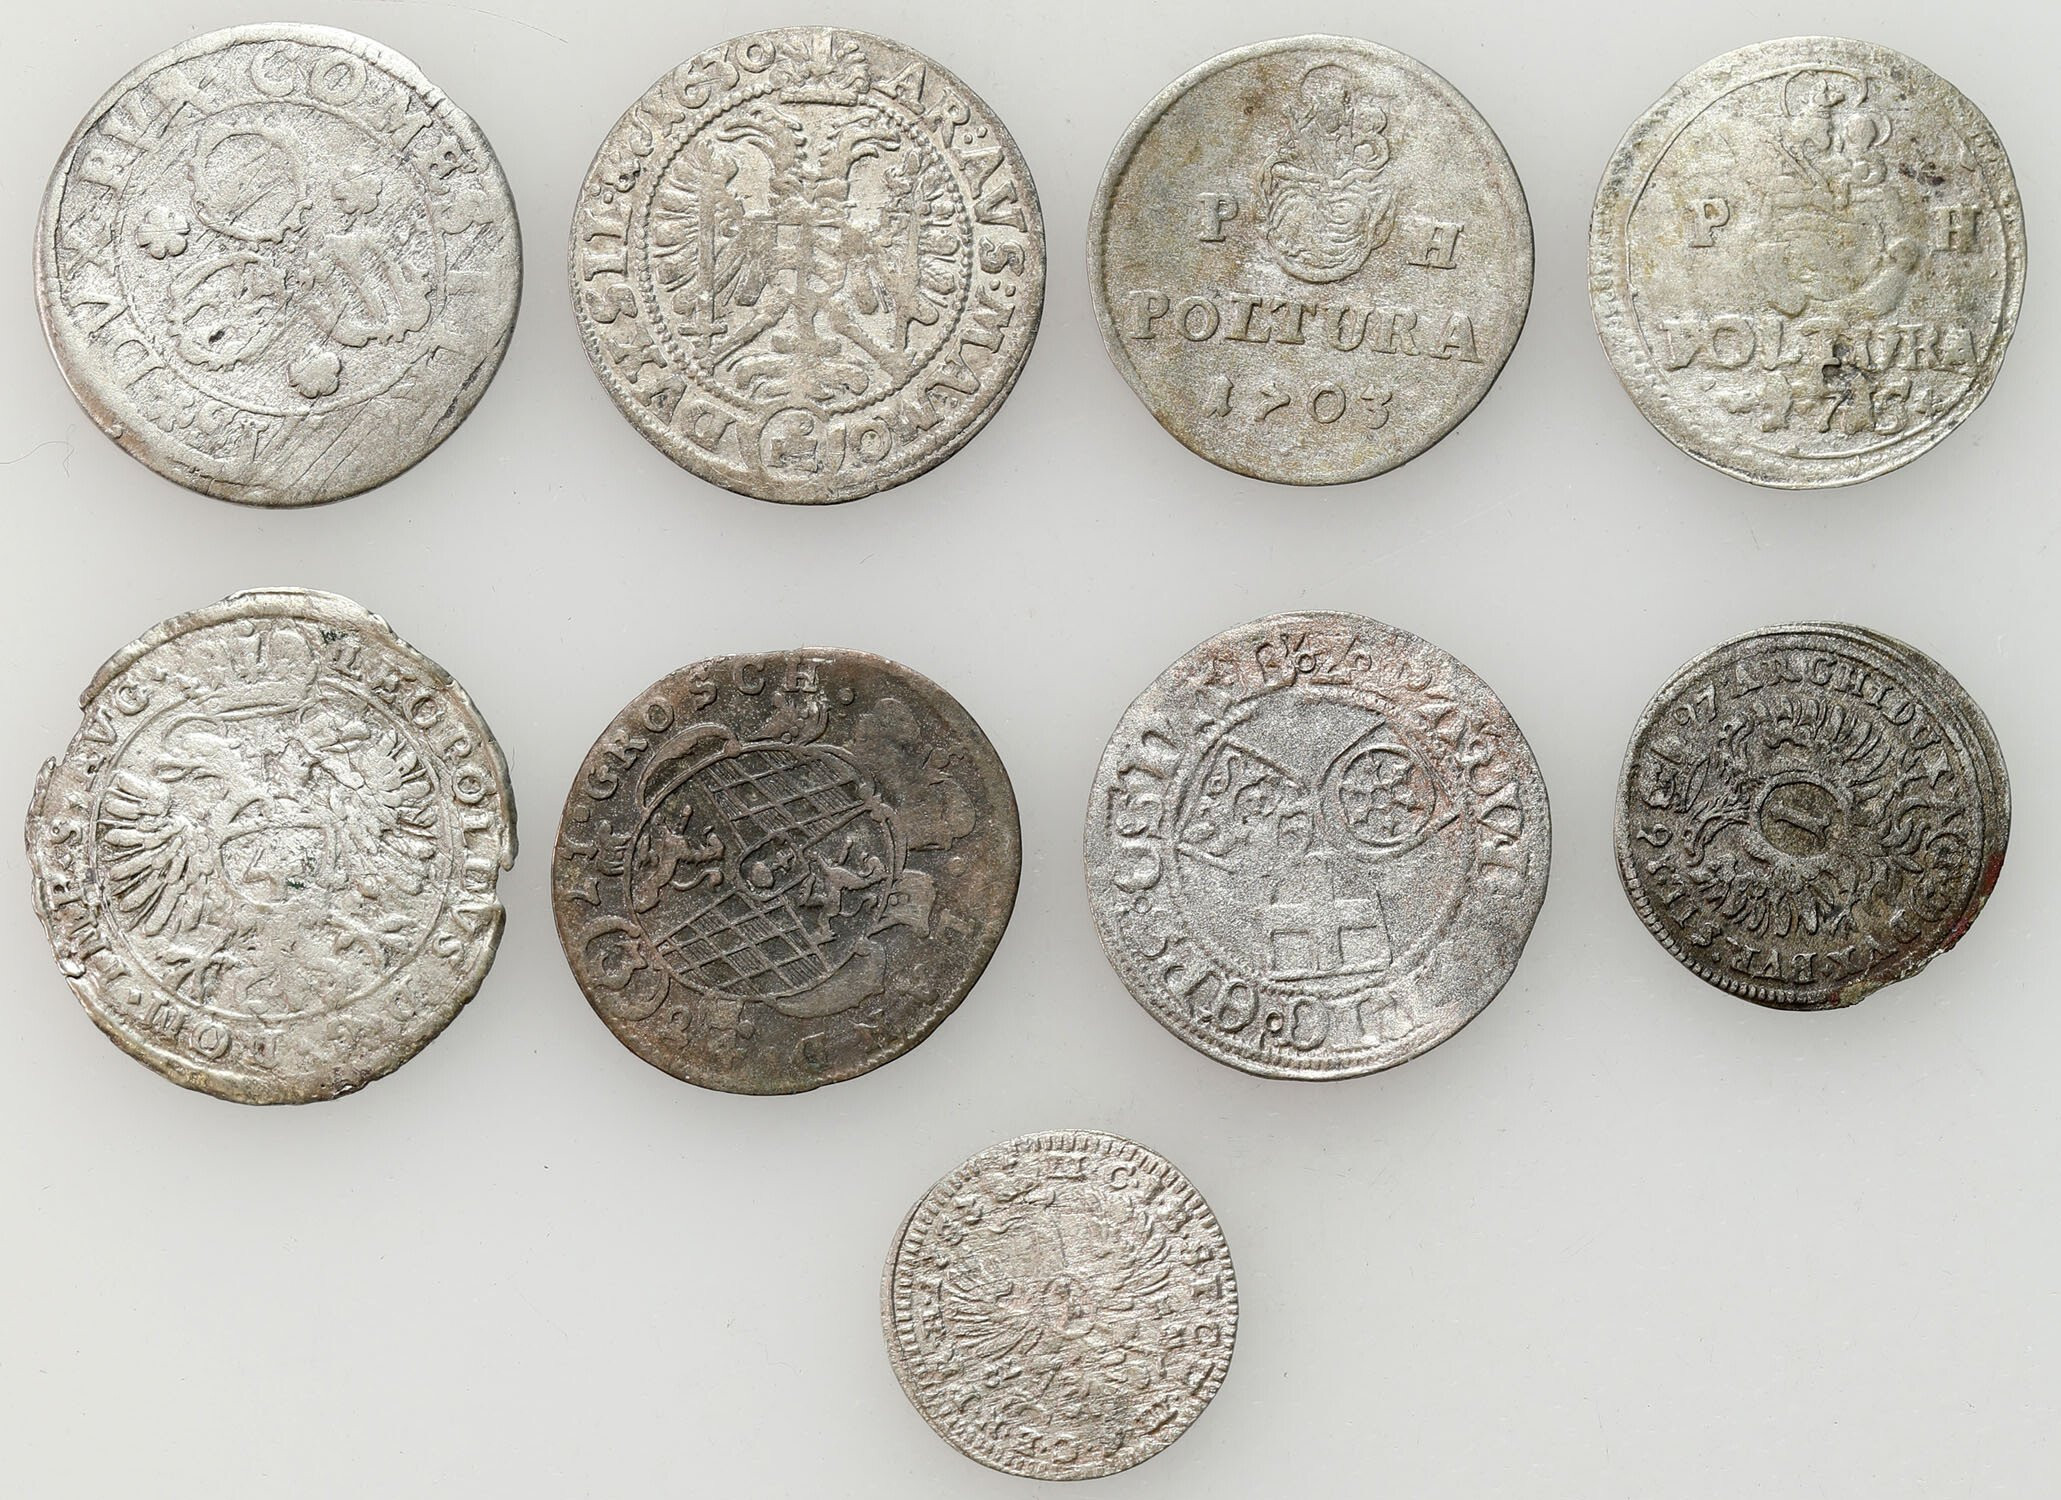 Austria, Niemcy, Śląsk, Węgry. 1 do 4 krajcarów, polrura, zestaw 9 monet, srebro